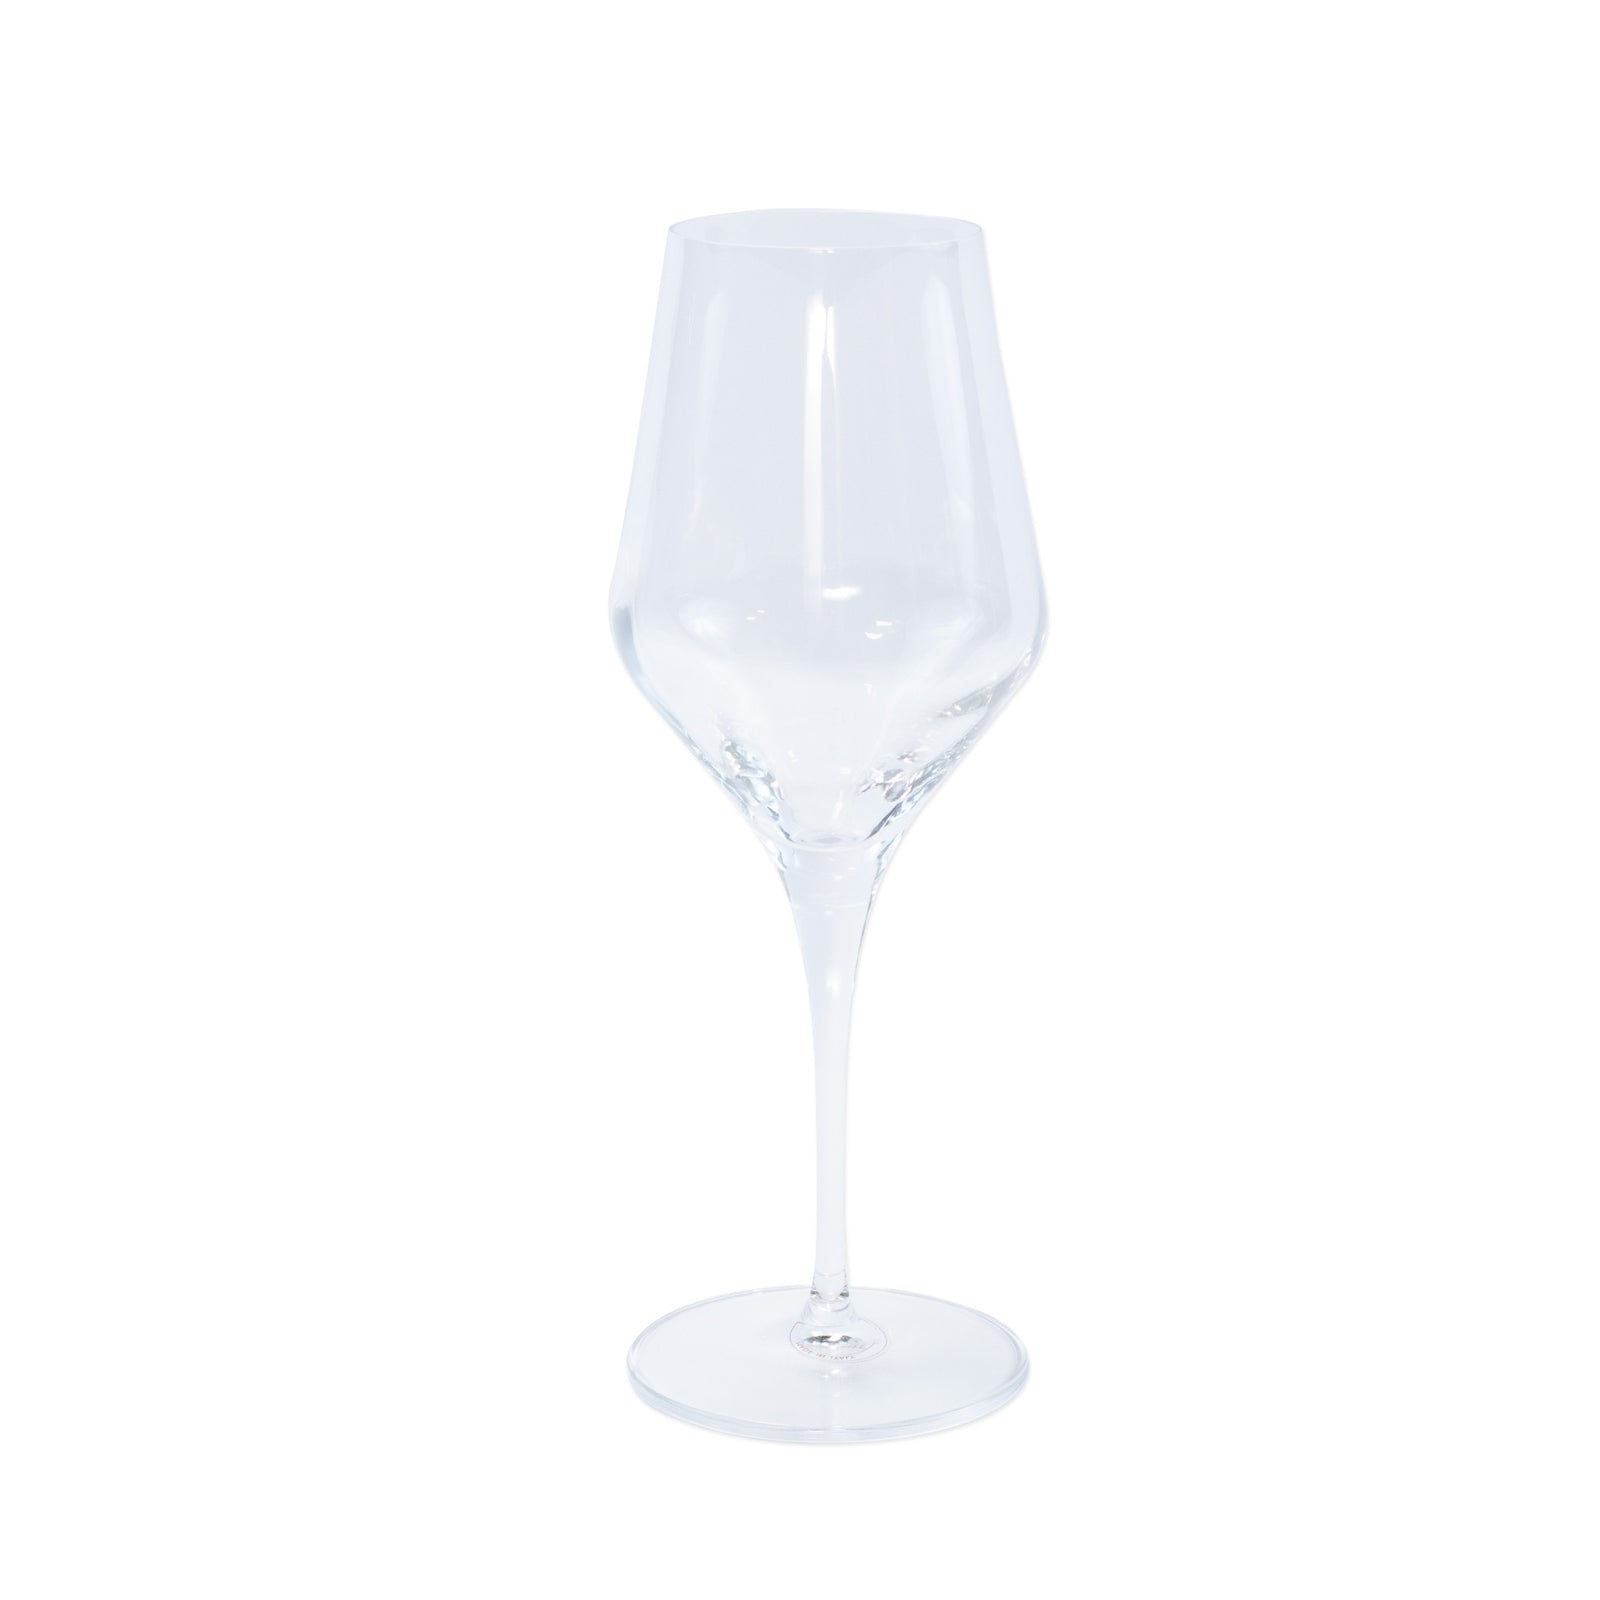 VIETRI: Contessa Clear Wine Glass - Artistica.com